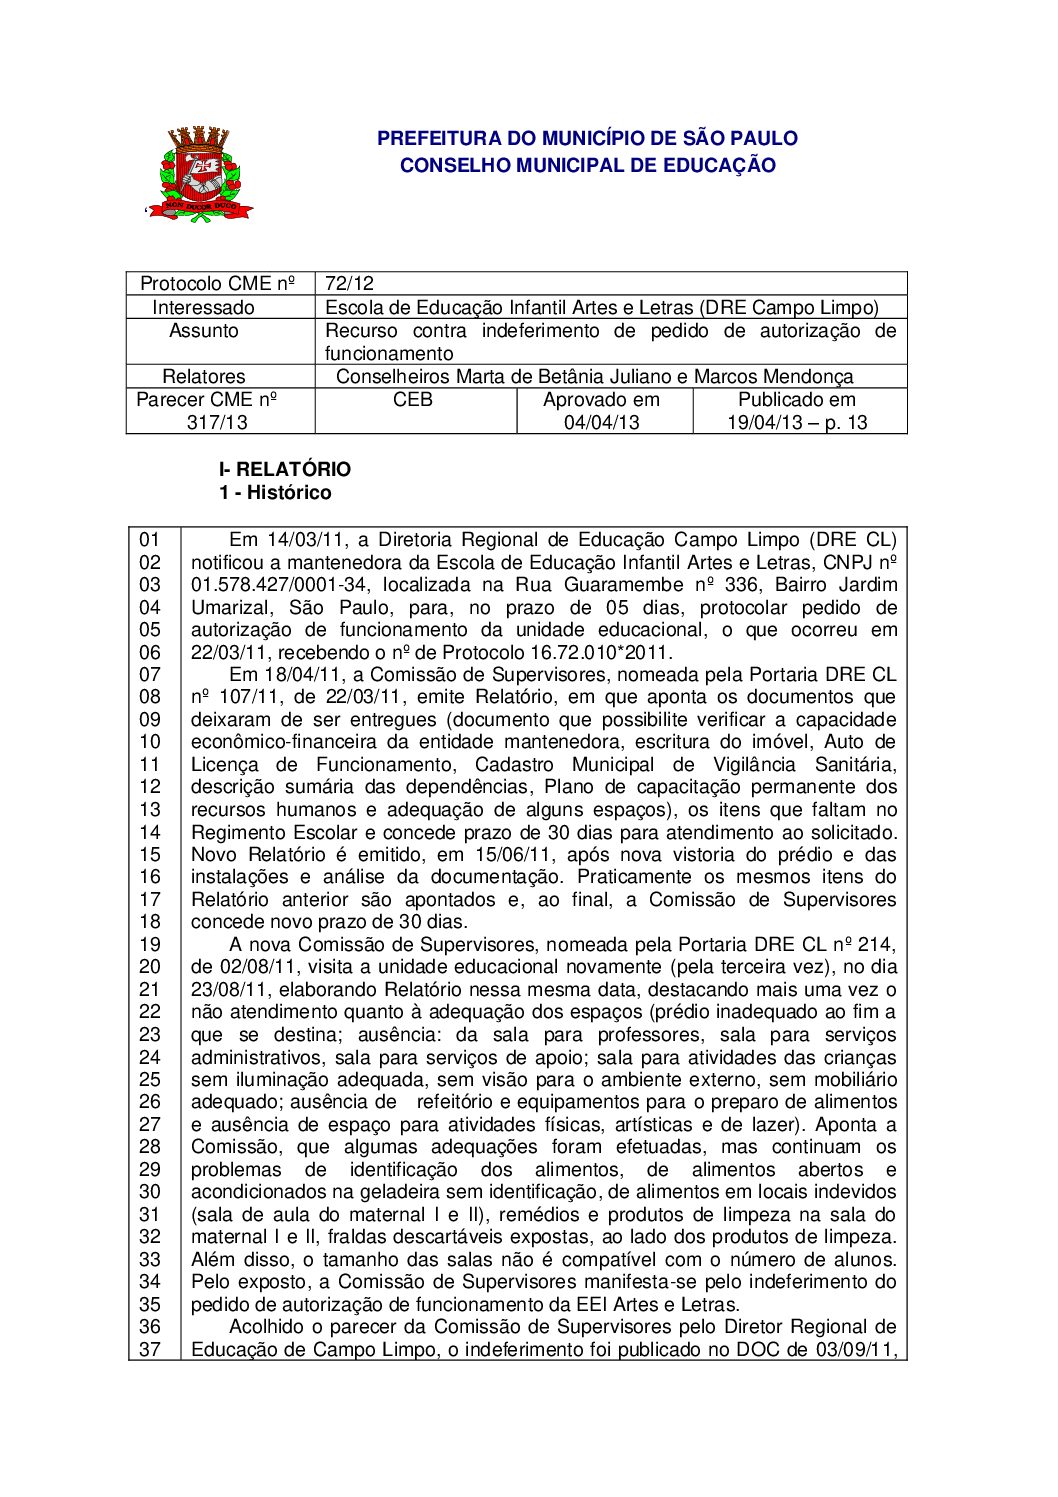 Parecer CME nº 317/2013 - Escola de Educação Infantil Artes e Letras (DRE Campo Limpo) - Recurso contra indeferimento de pedido de autorização de funcionamento 